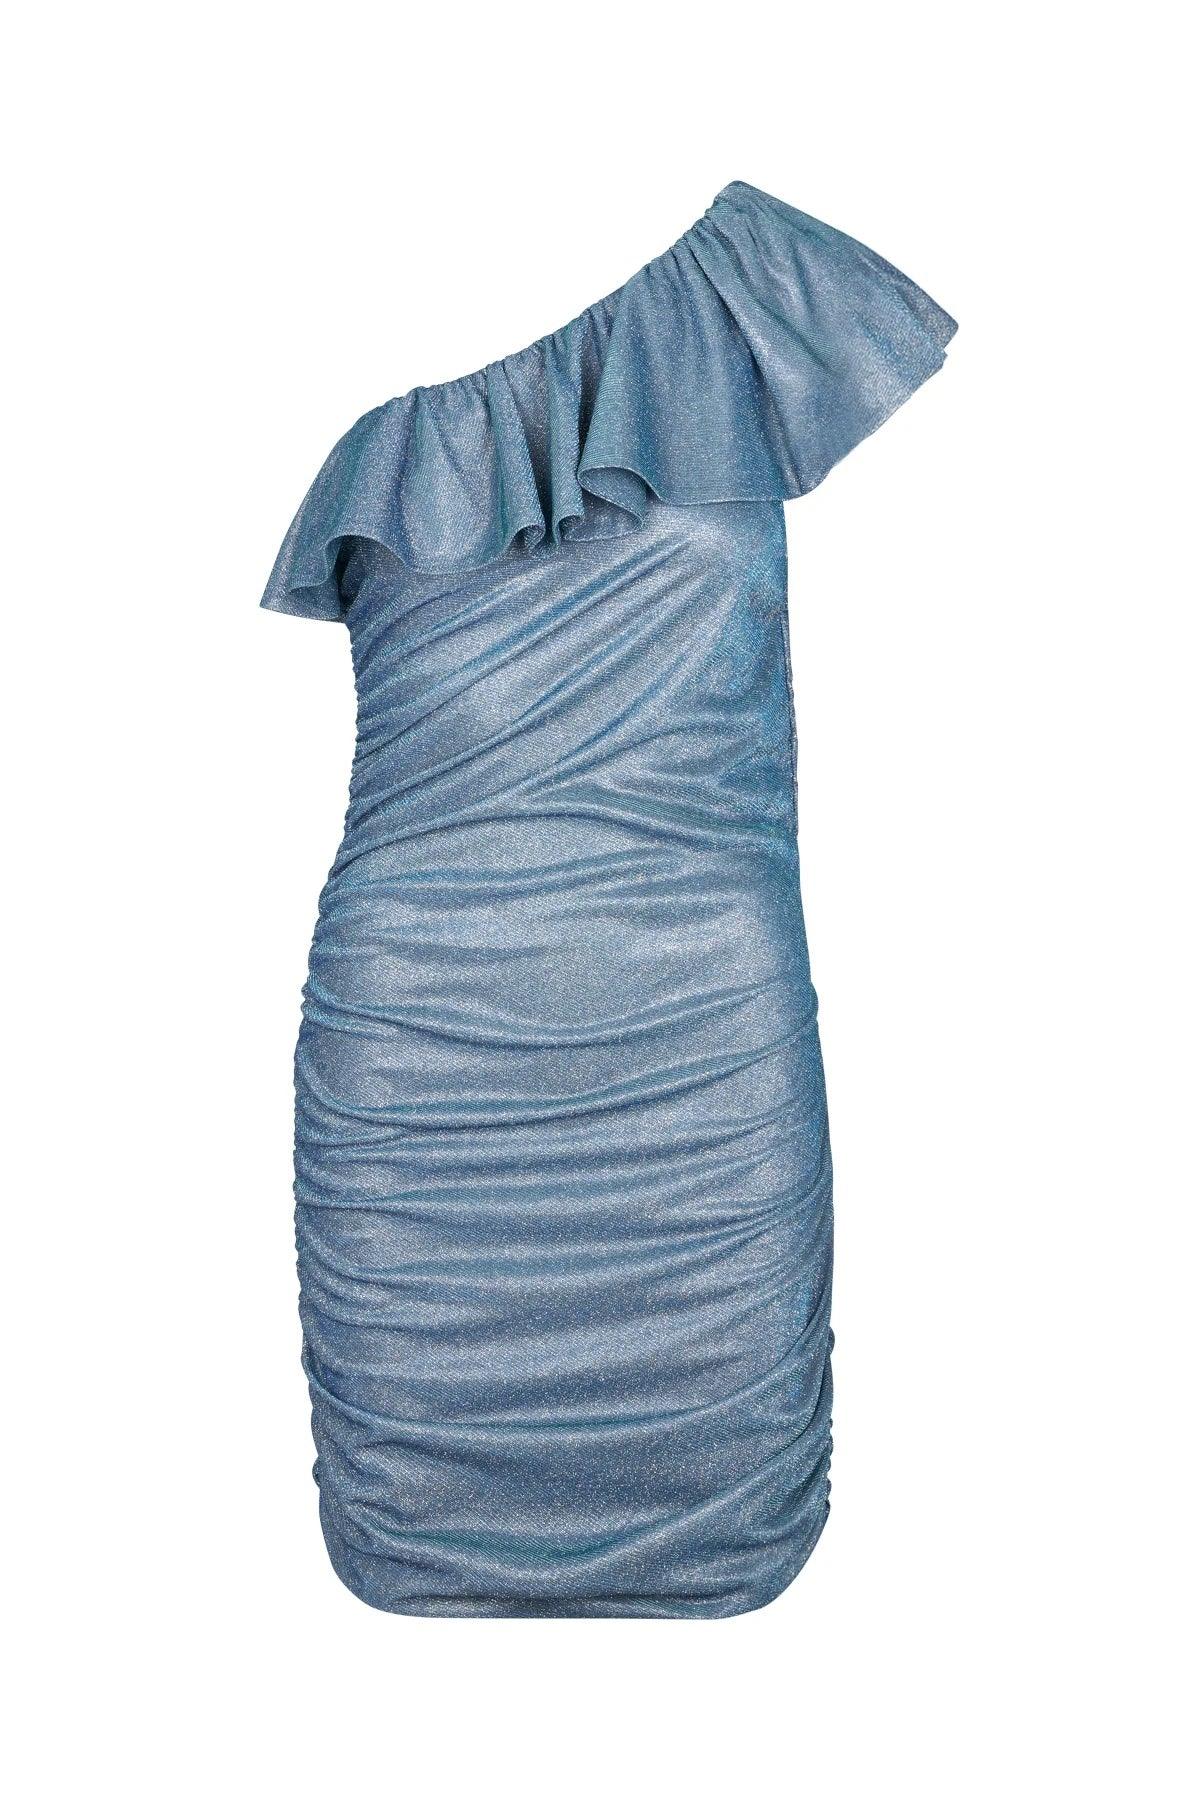 Idun Dress Blue Silver - No22 Damplassen